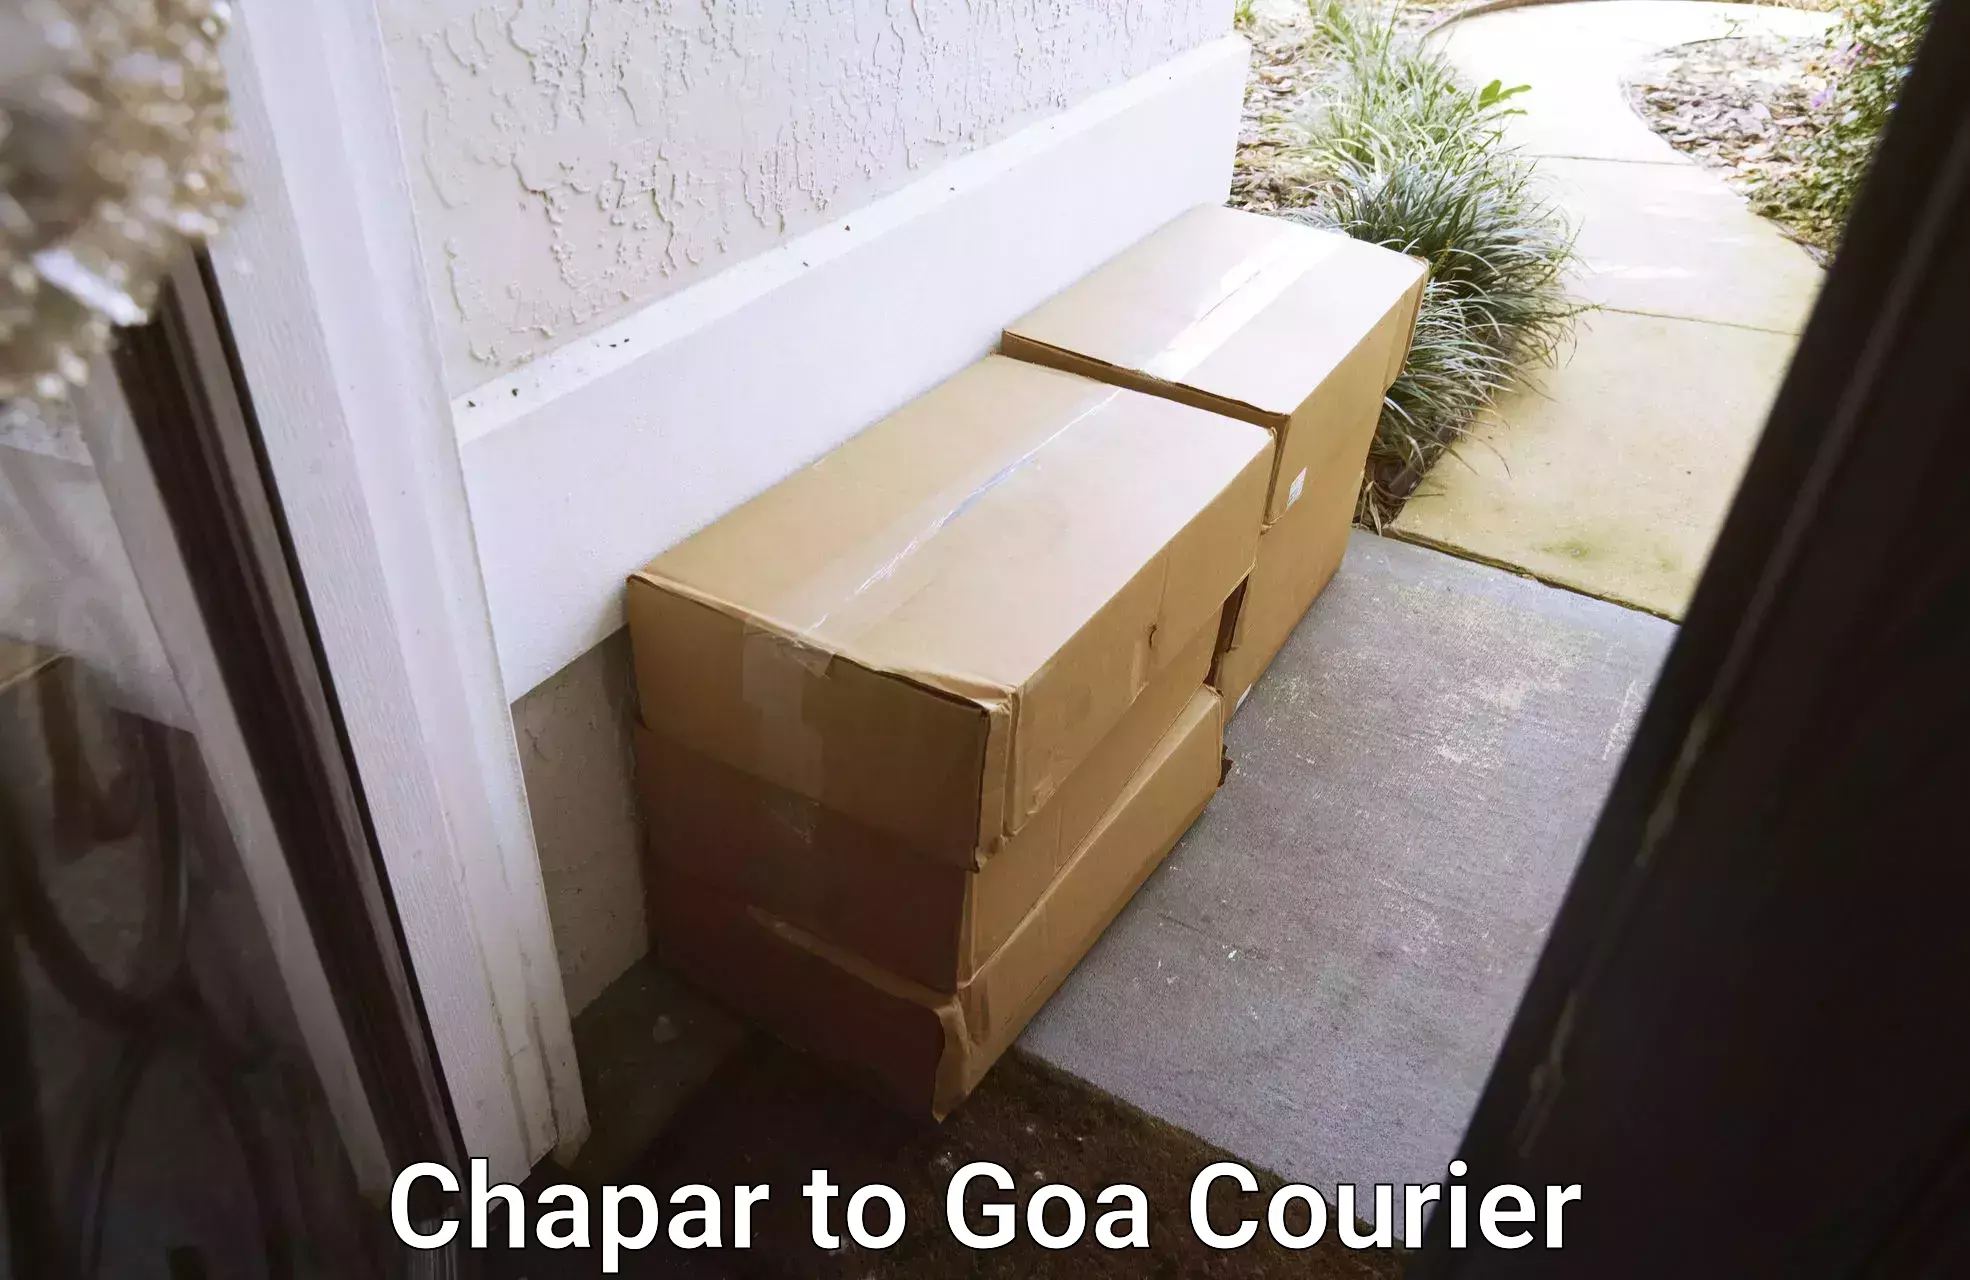 24/7 shipping services Chapar to Goa